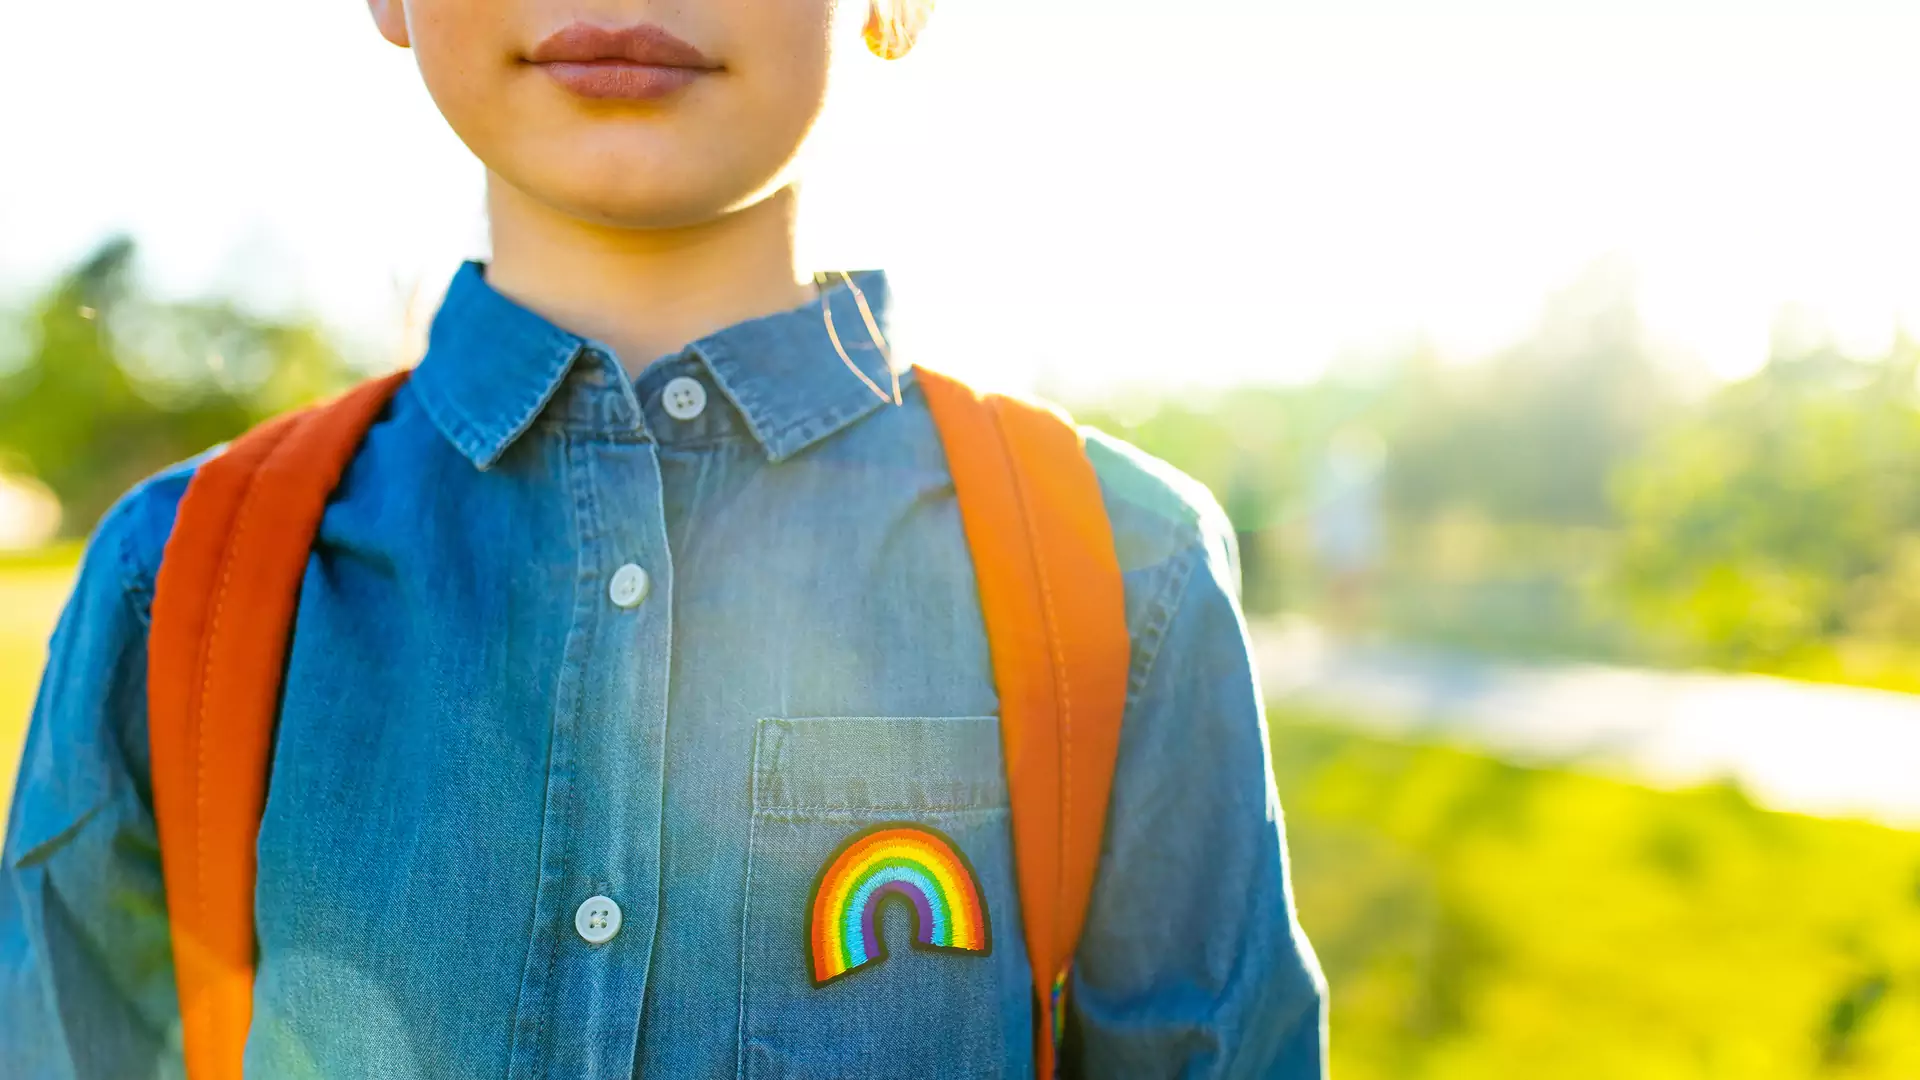 Nauczyciele o pomocy uczniom LGBT+. Często nie reagują, żeby "nie pogorszyć sytuacji"